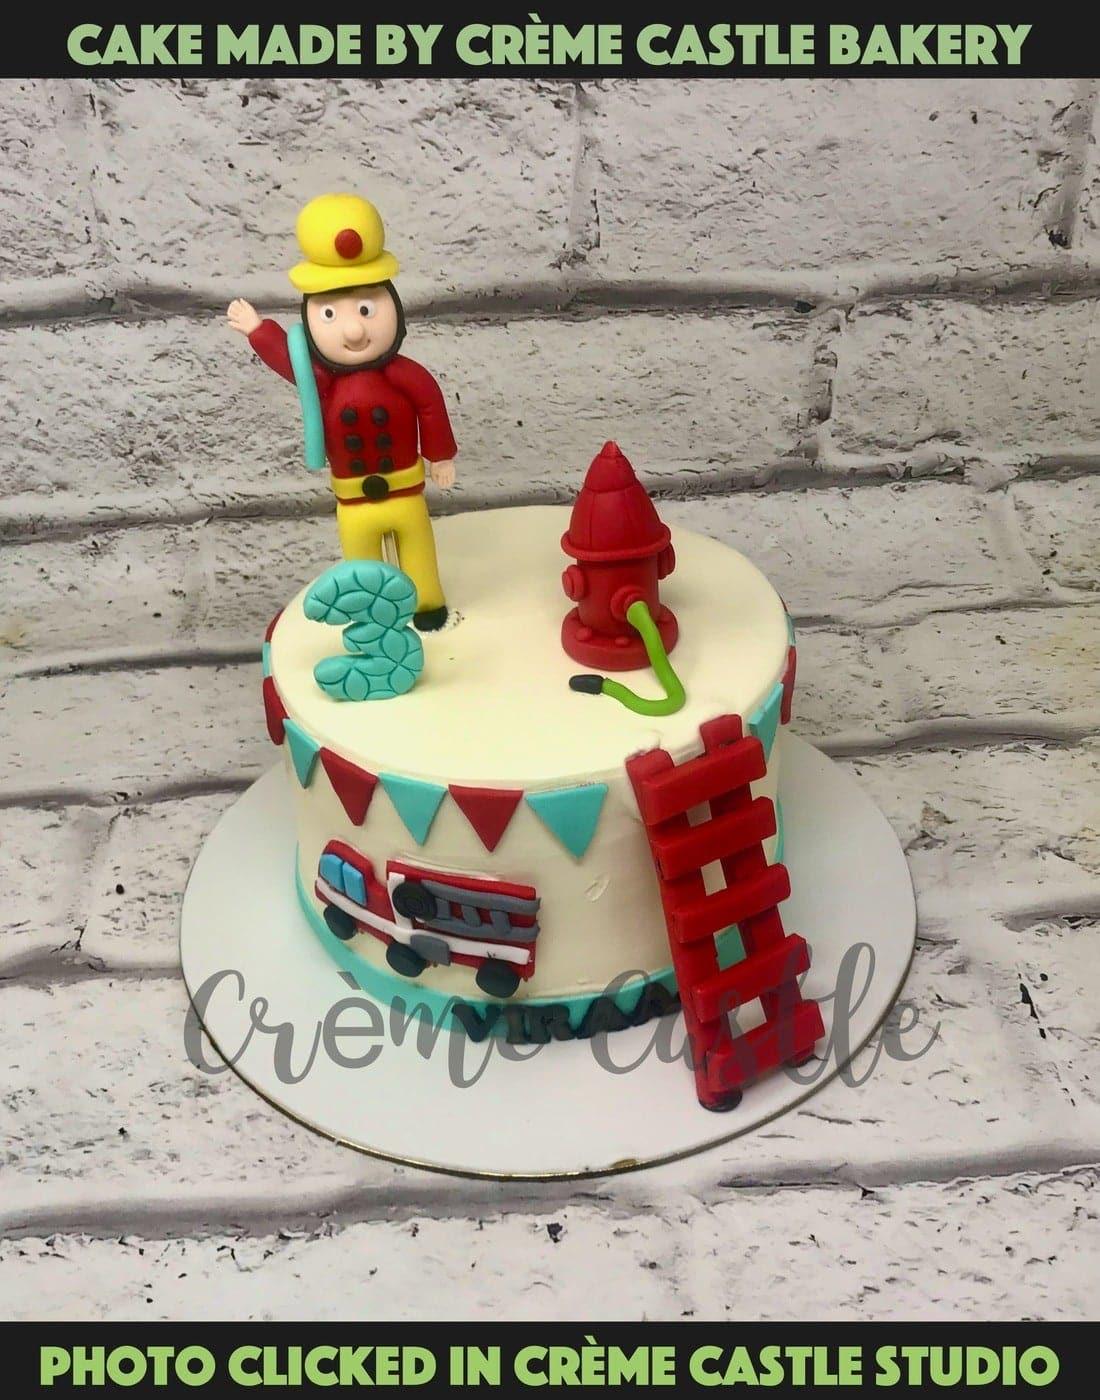 Character & novelty themed birthday party cake and celebration cakes  Ashford, Staines, Sunbury, Feltham, Laleam, Hounslow